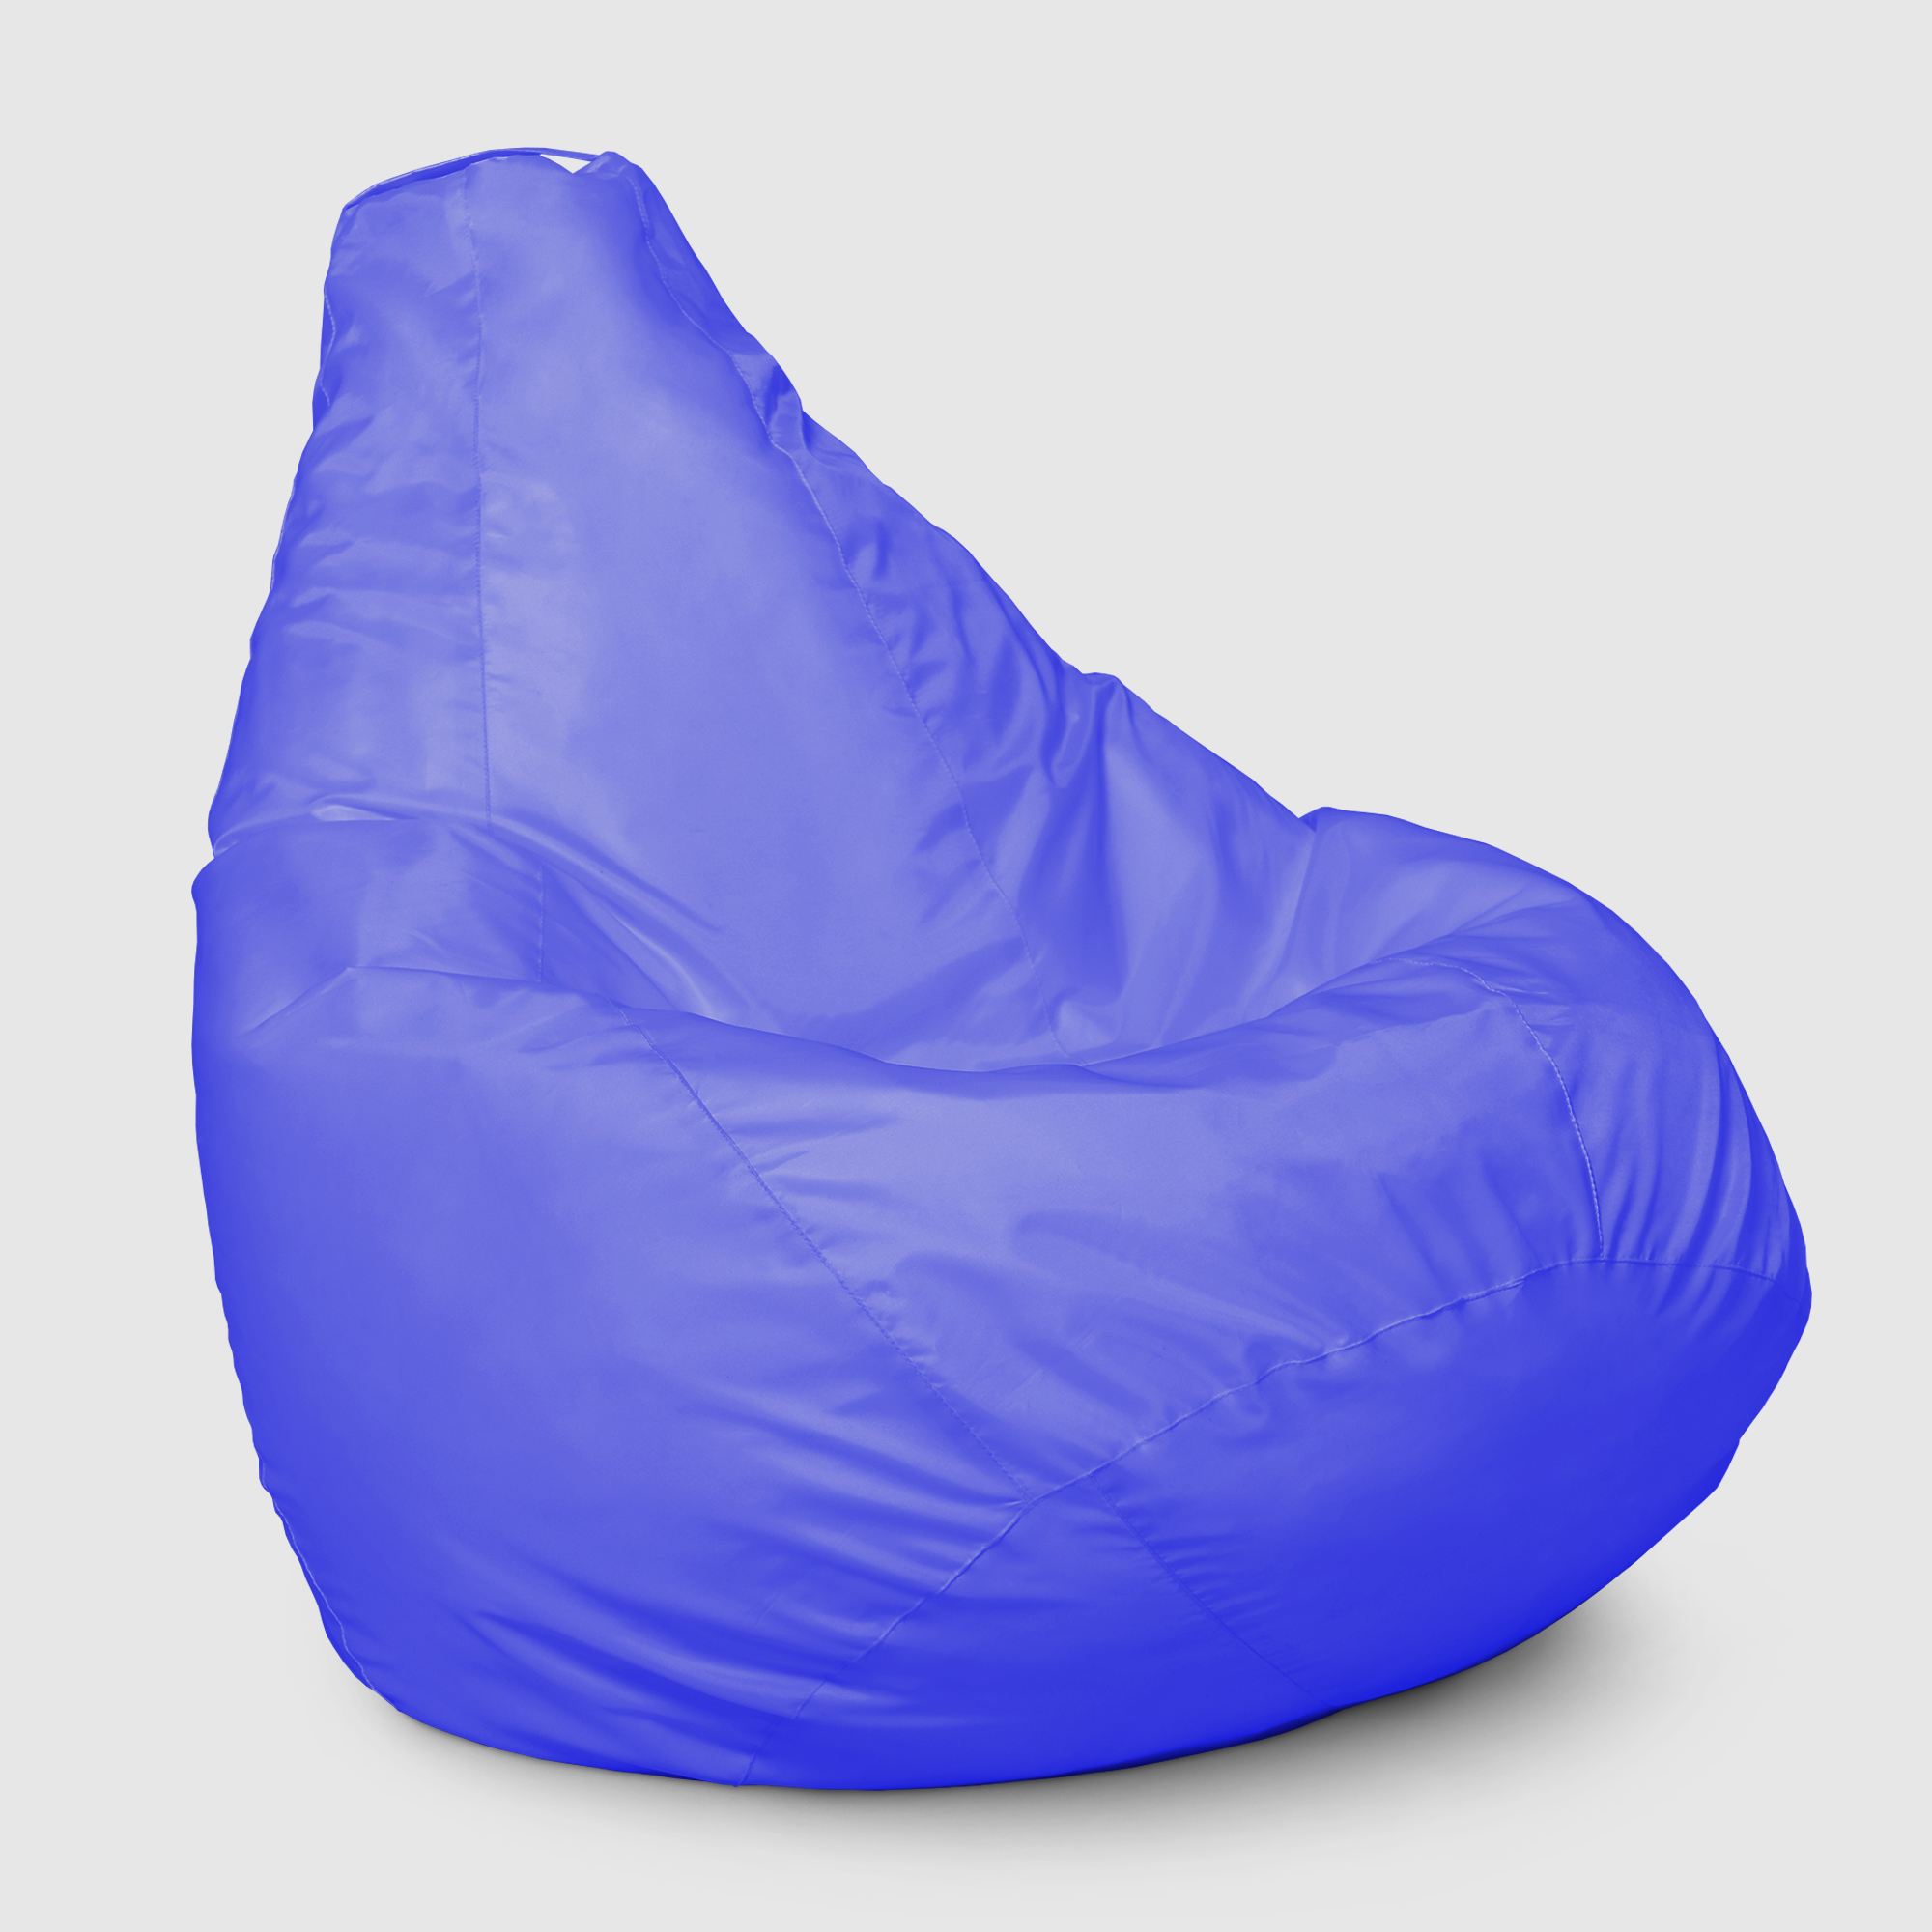 Кресло мешок Dreambag Меган xl Синее 85х85х125 см кресло мешок dreambag меган xl оранжевое 85х85х125см